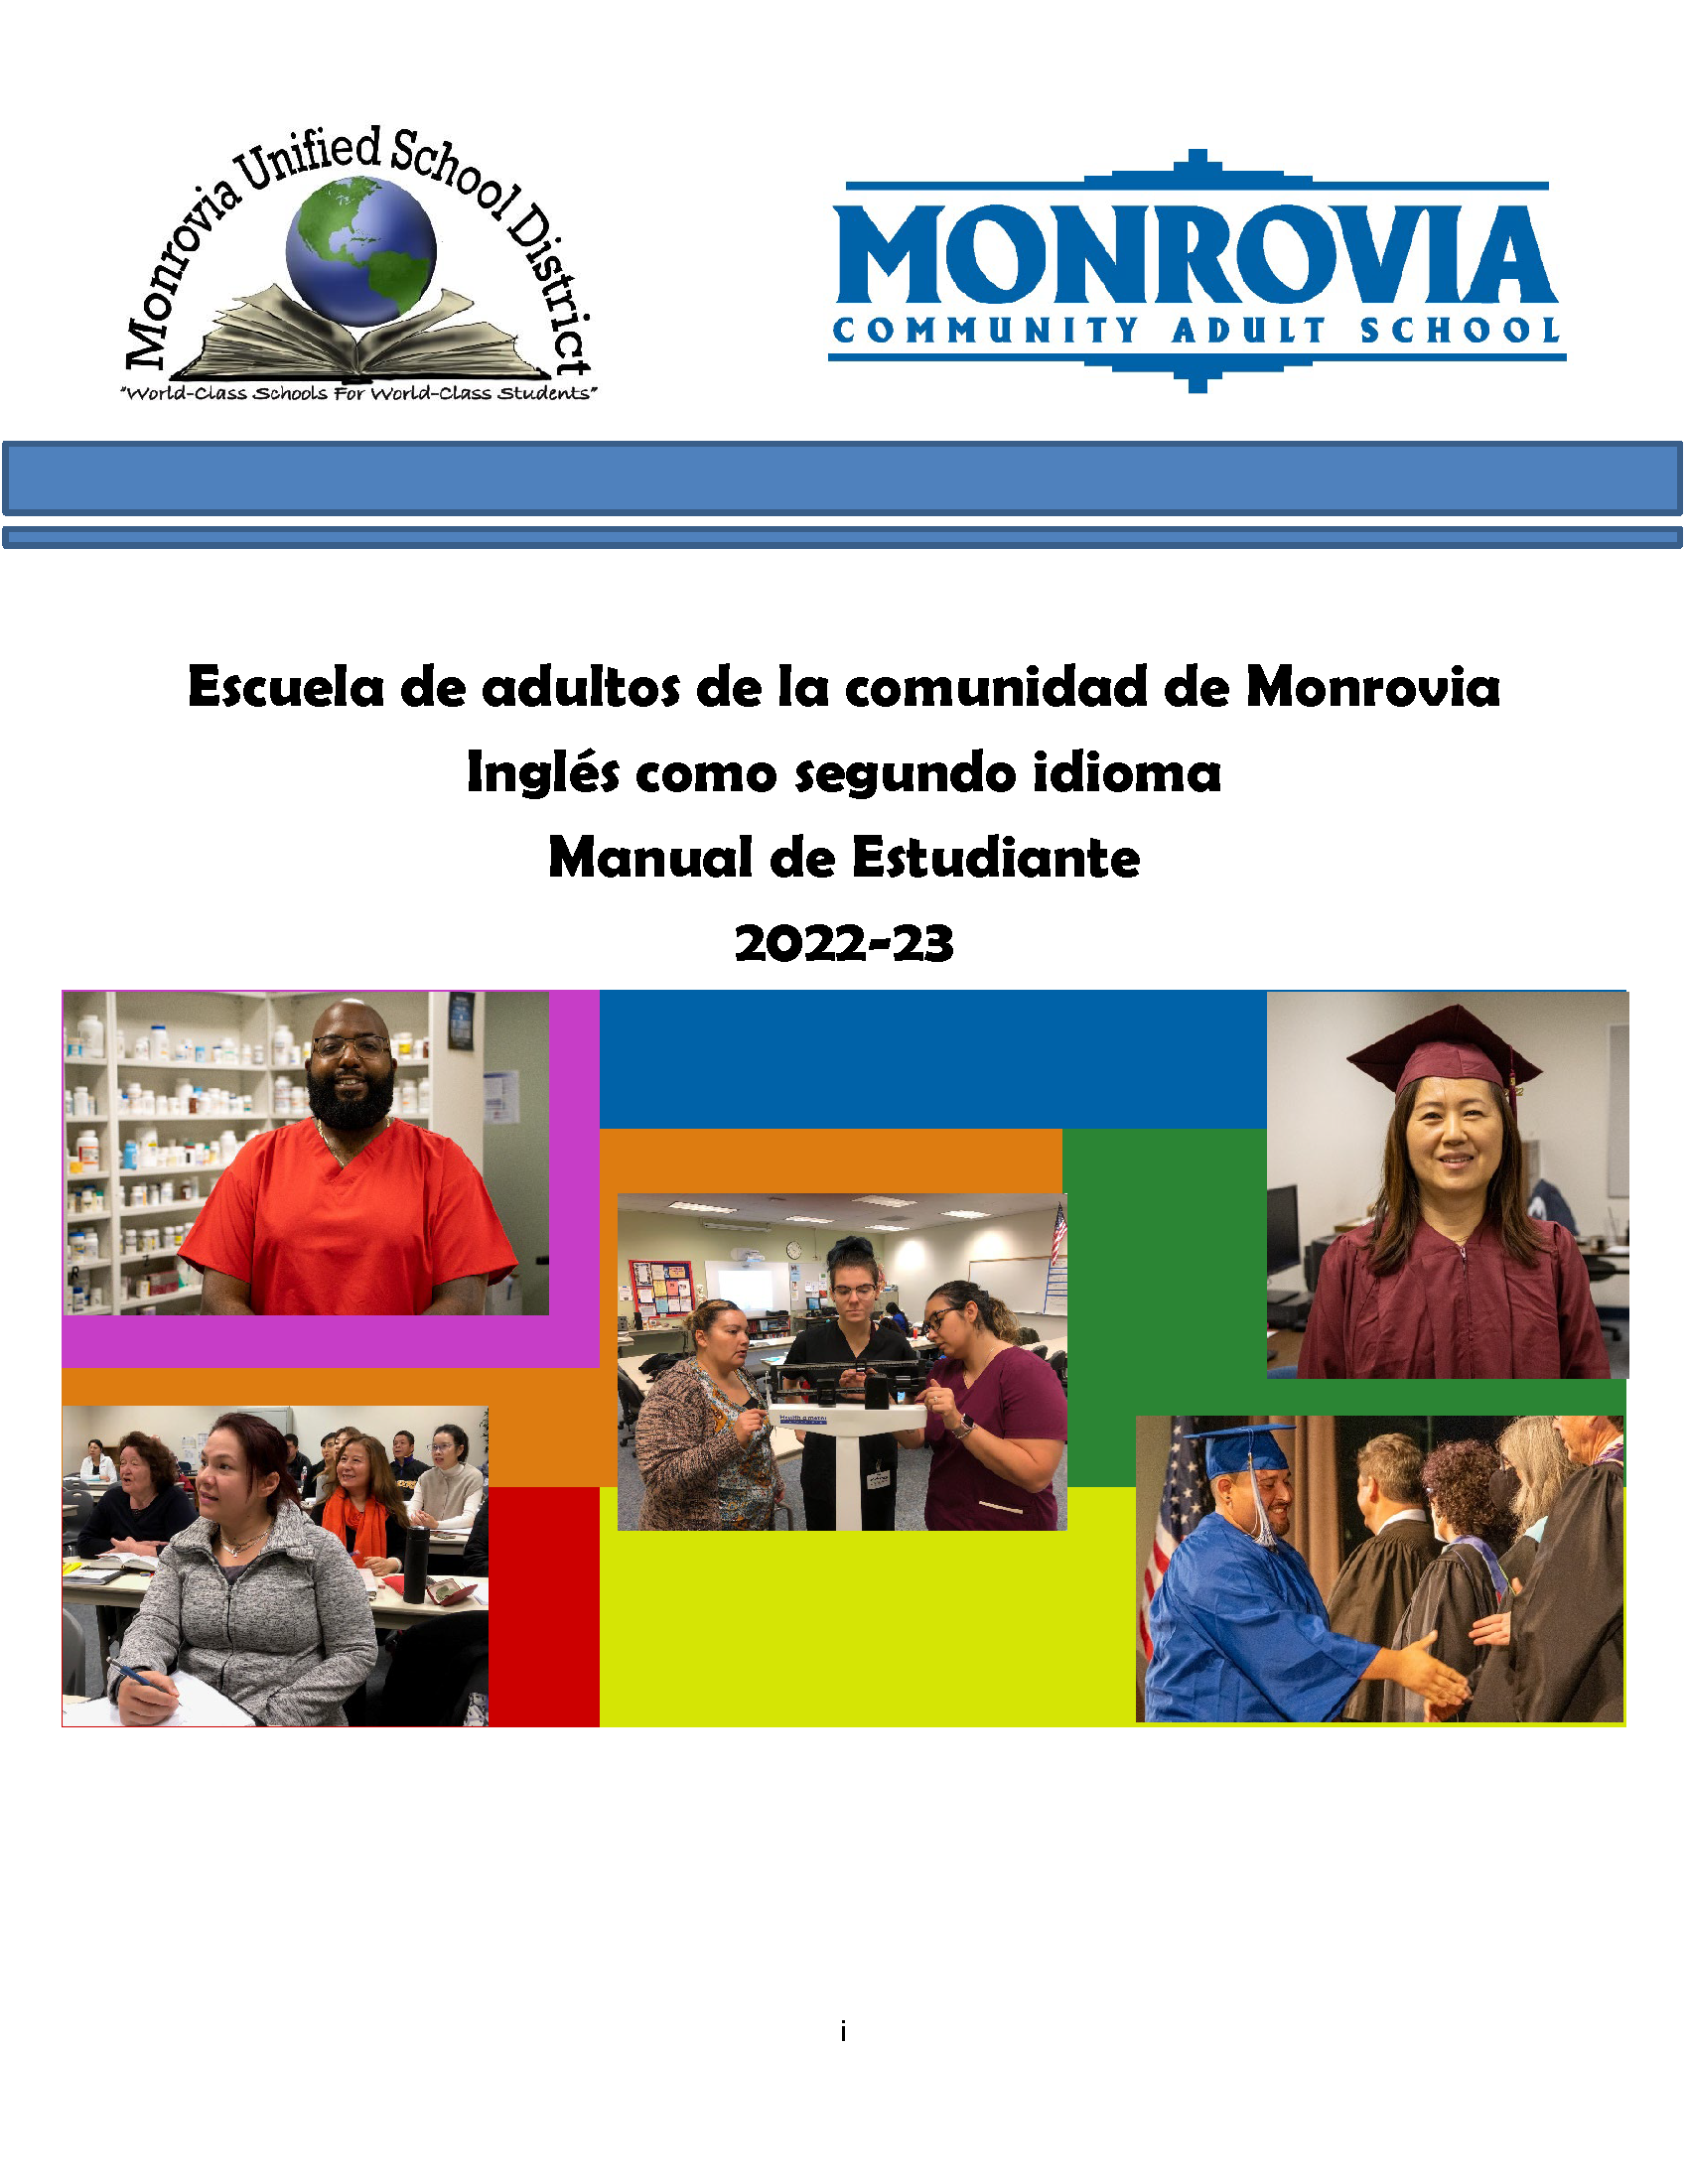 Image of Monrovia Adult School Handbook 2017-18